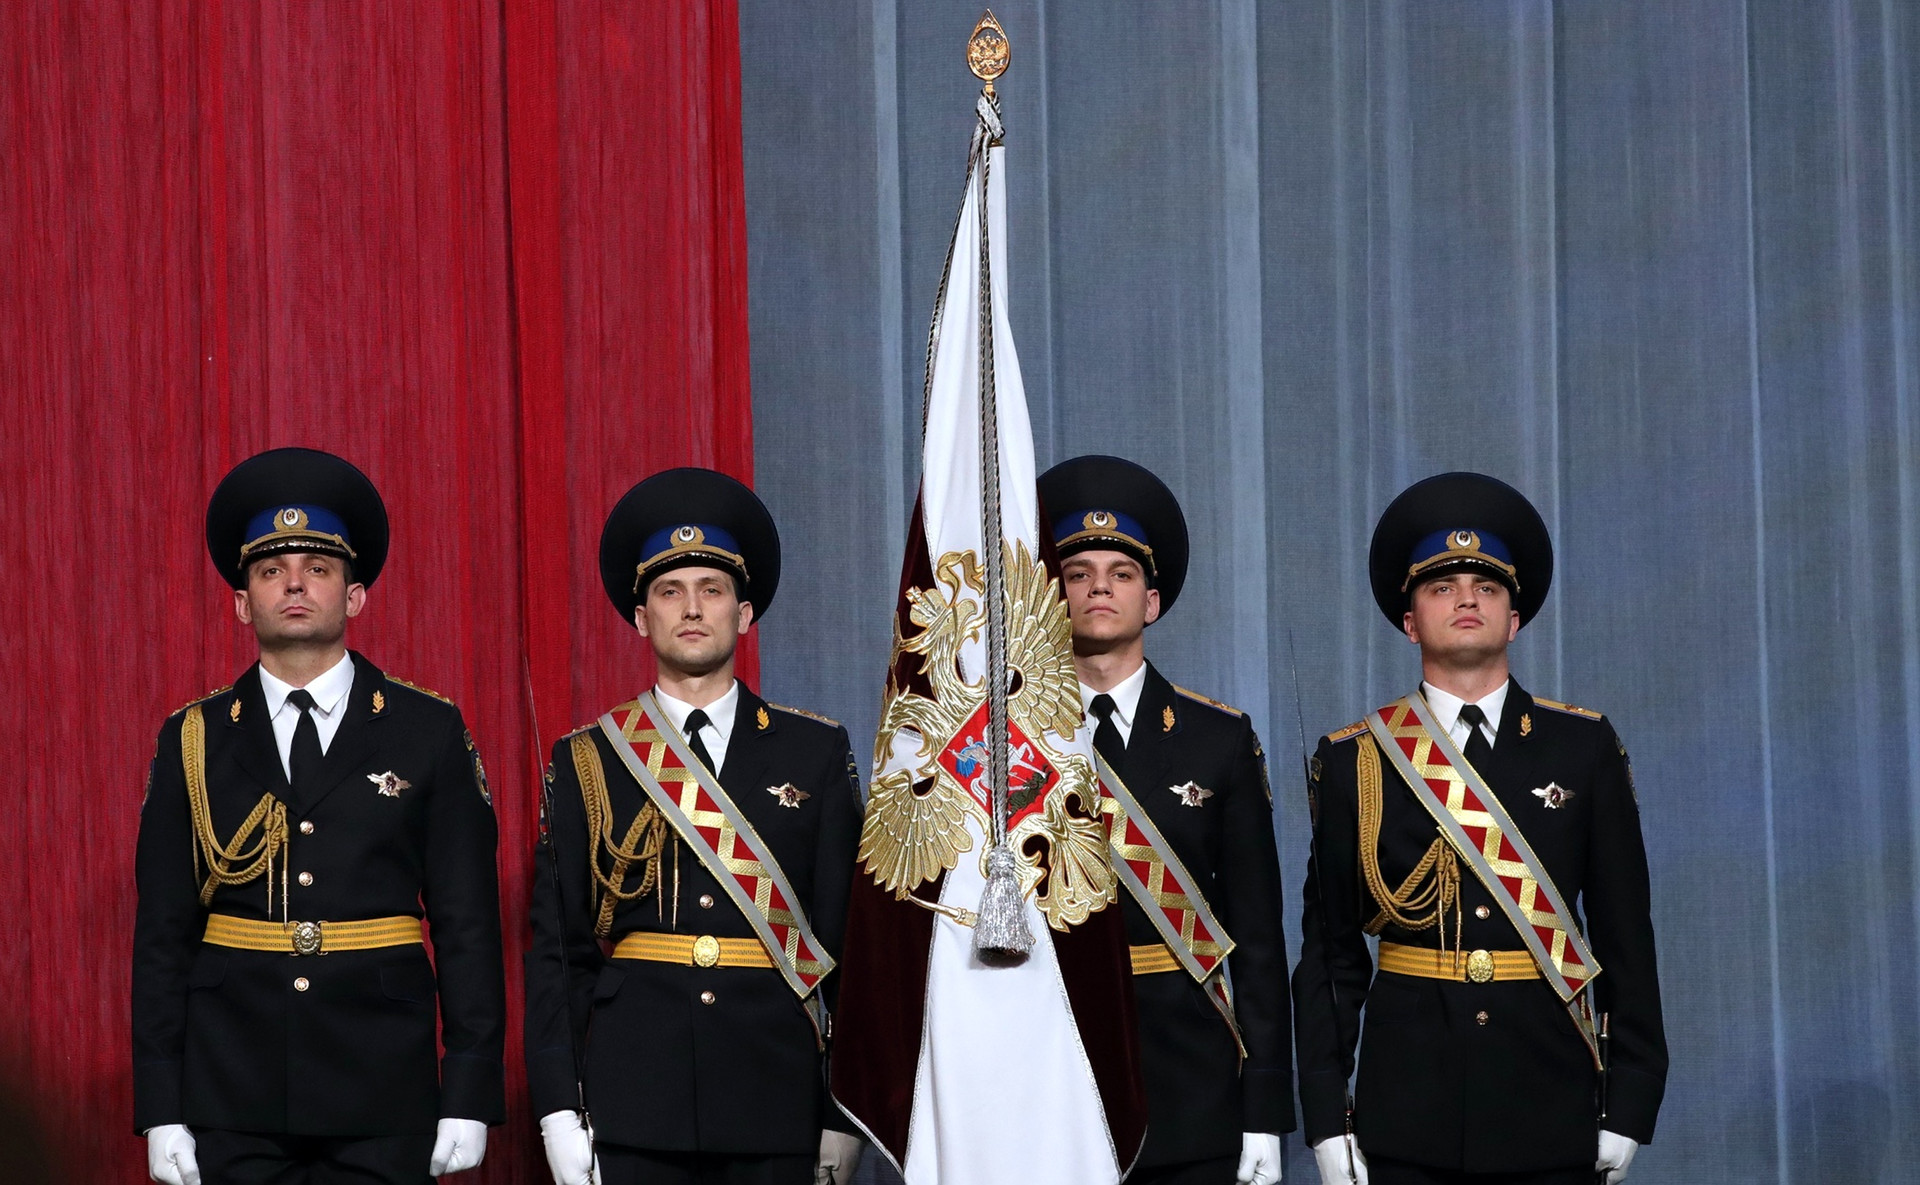 Ruska nacionalna garda (Rosgvardija) na sprejemu v Kremlju, marec 2017